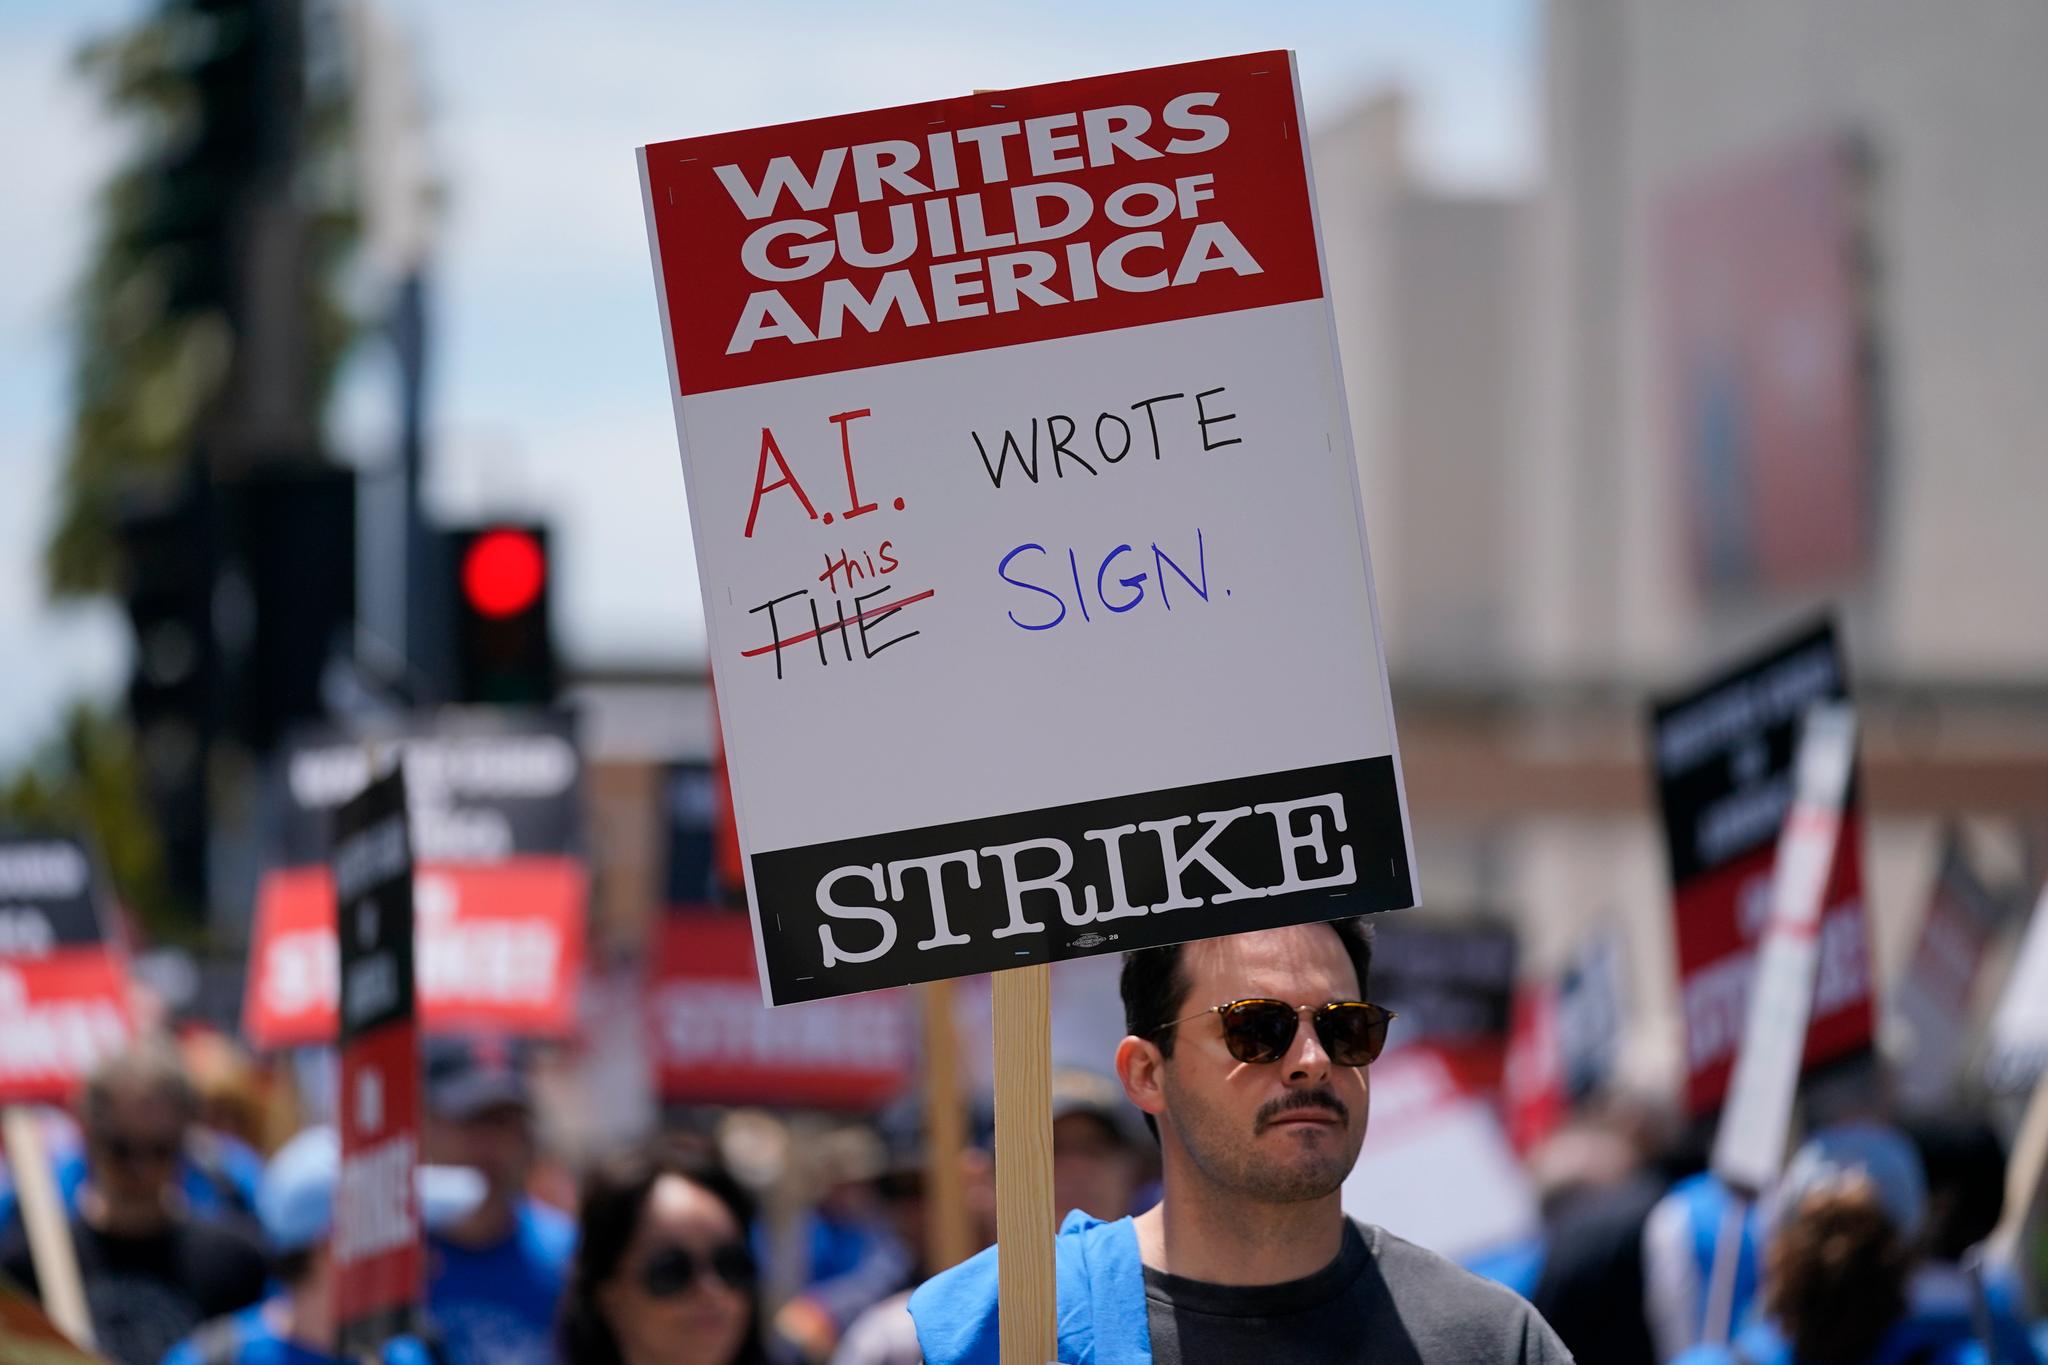 Utfallet av streiken i Hollywood er viktig, mener kronikkforfatterne. Bildet: Writers Guild of America representerer 11.500 manusforfattere. De har streiket siden begynnelsen av mai. 